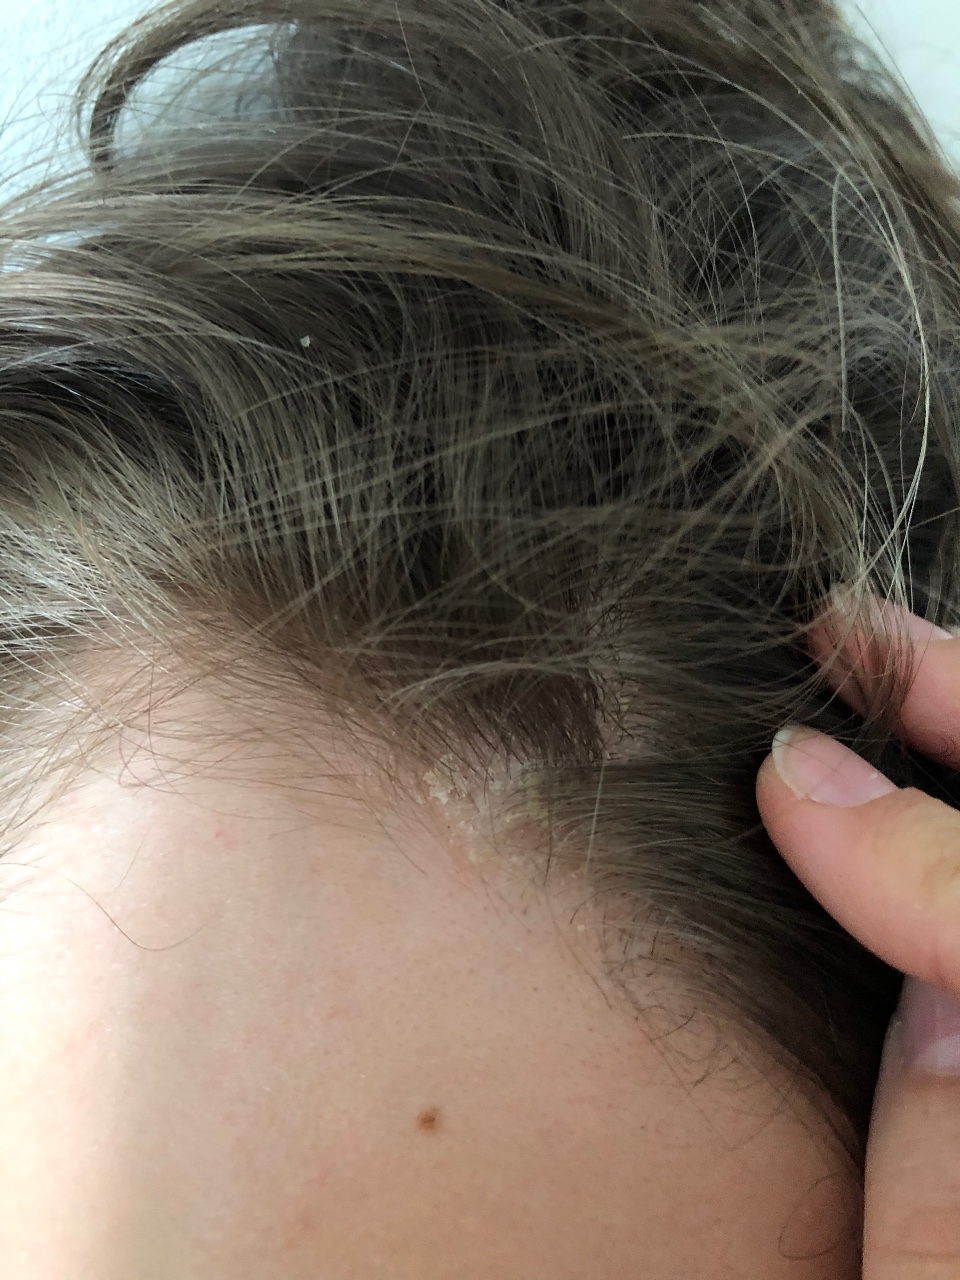 себорейный дерматит на голове у ребенка фото